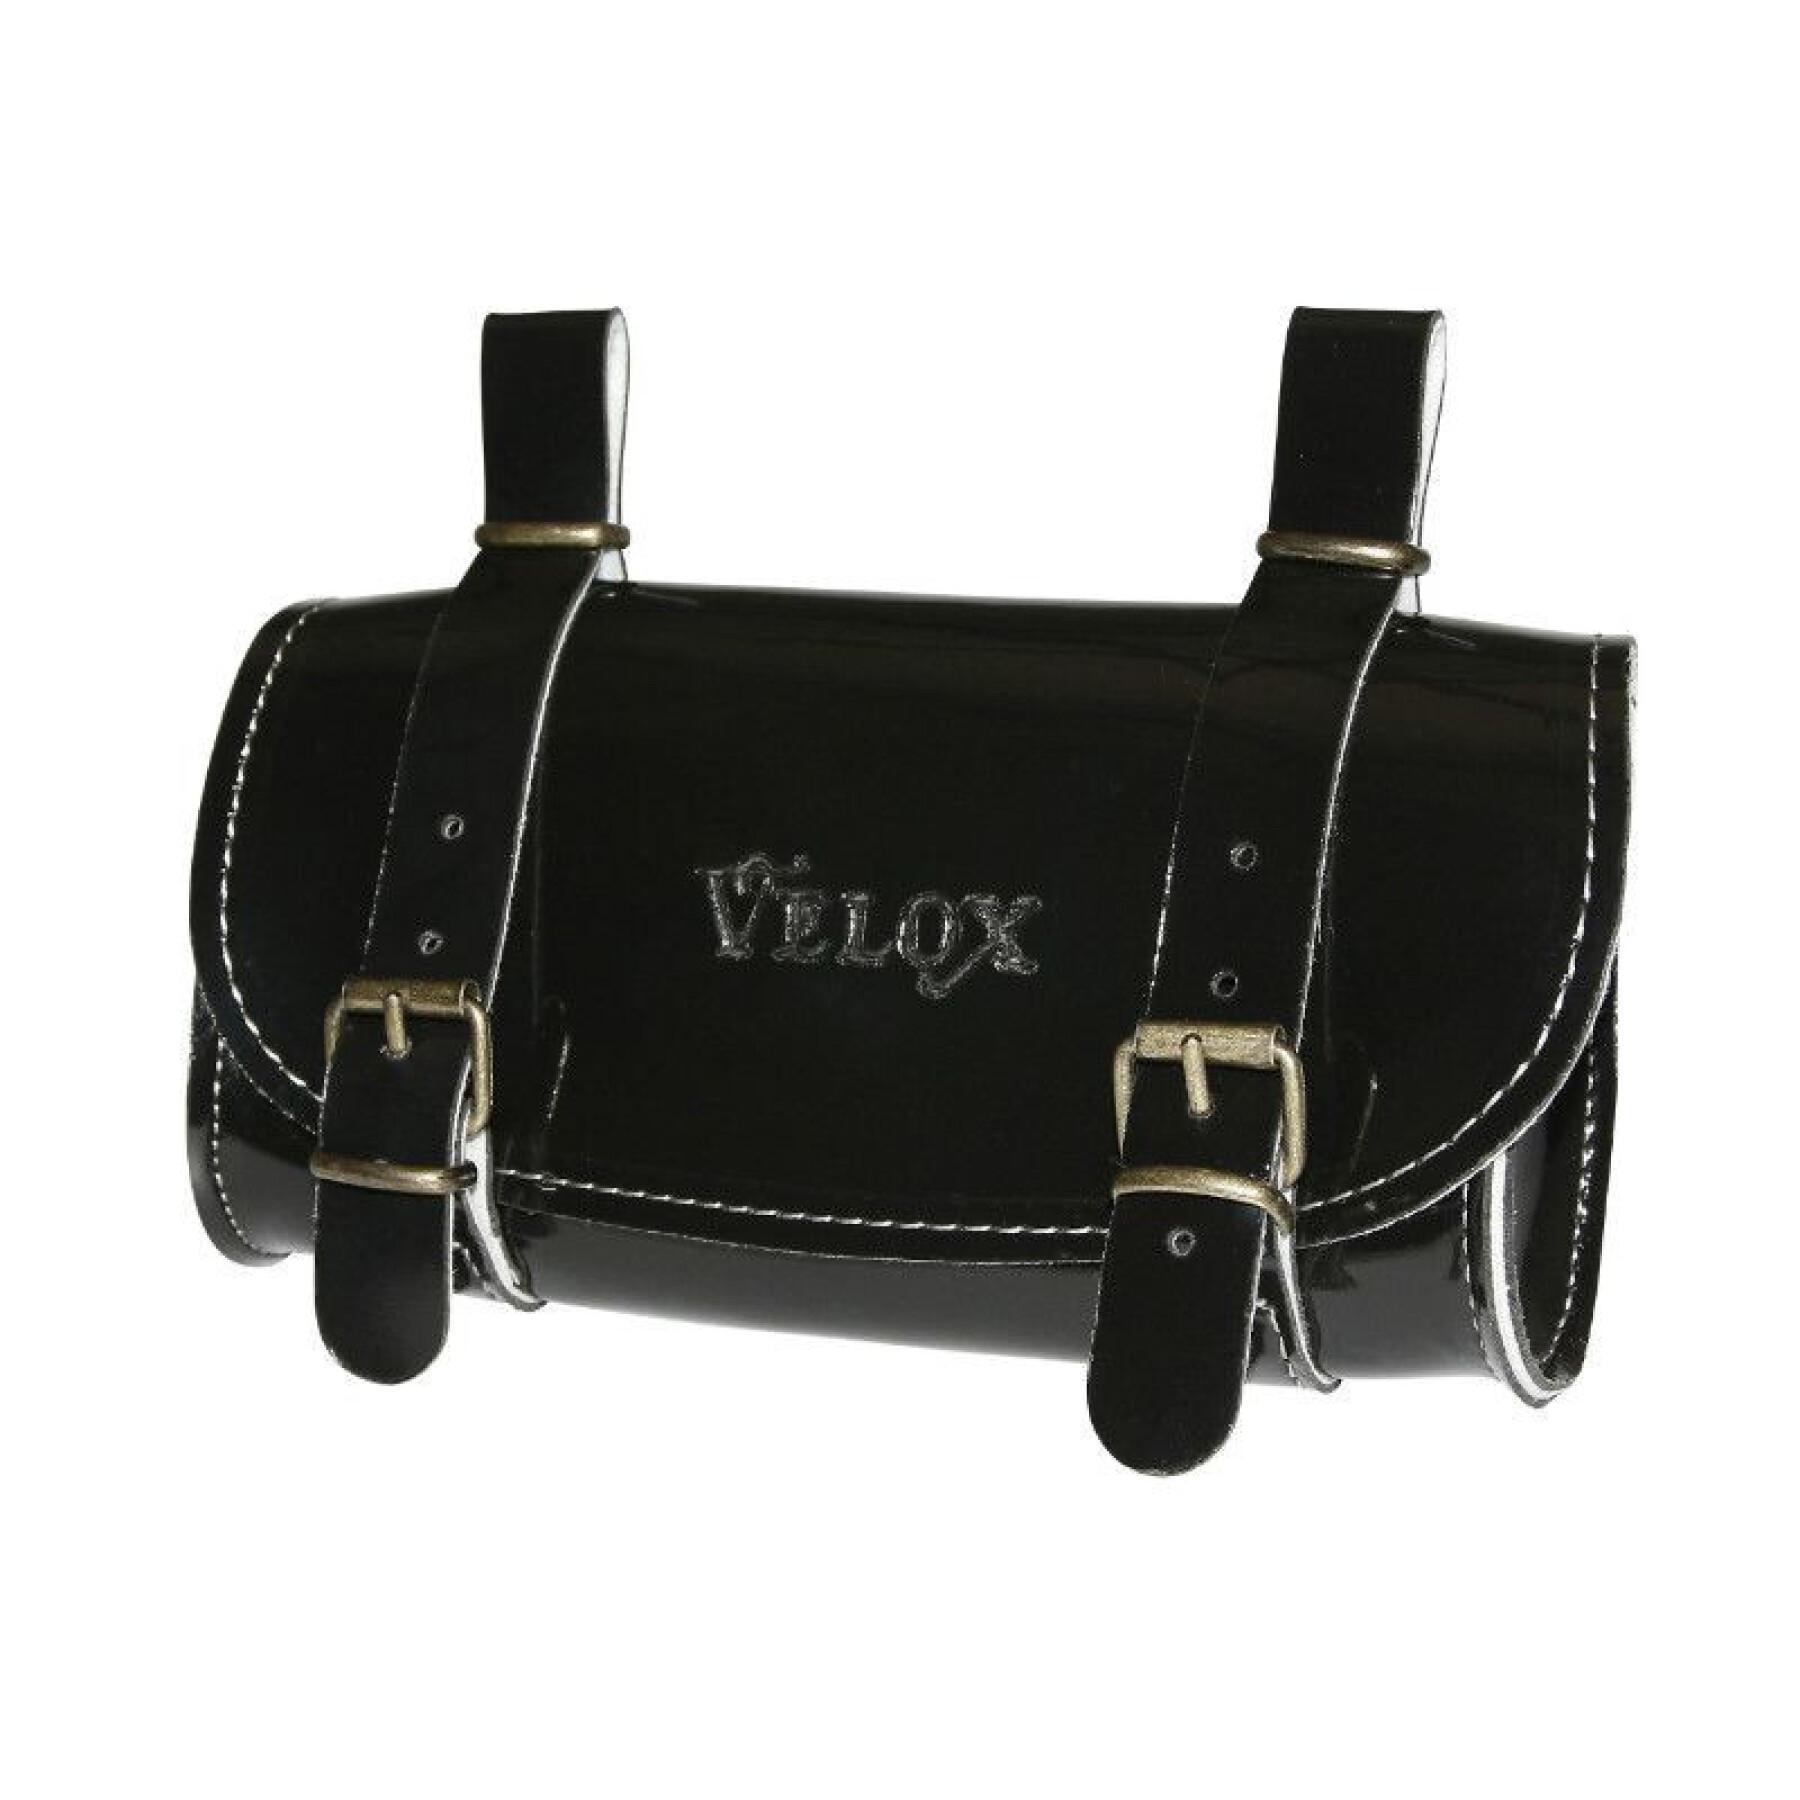 Skórzana torba na siodło Velox 78 g